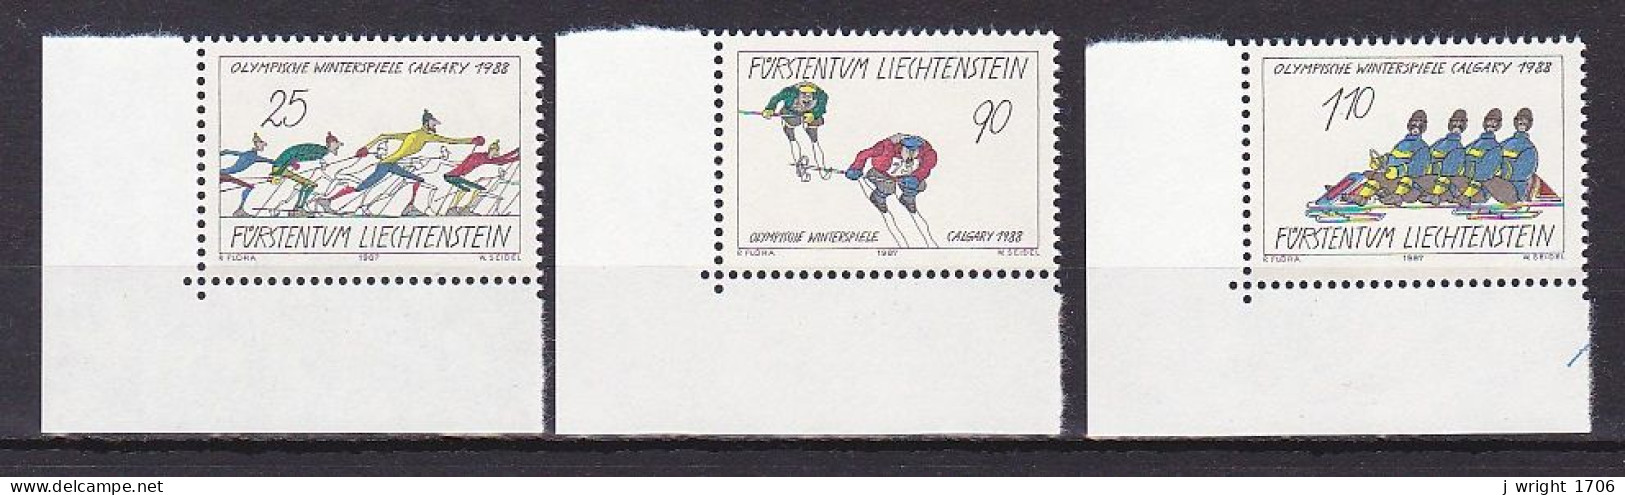 Liechtenstein, 1987, Olympic Winter Games 1988, Set, MNH - Ongebruikt